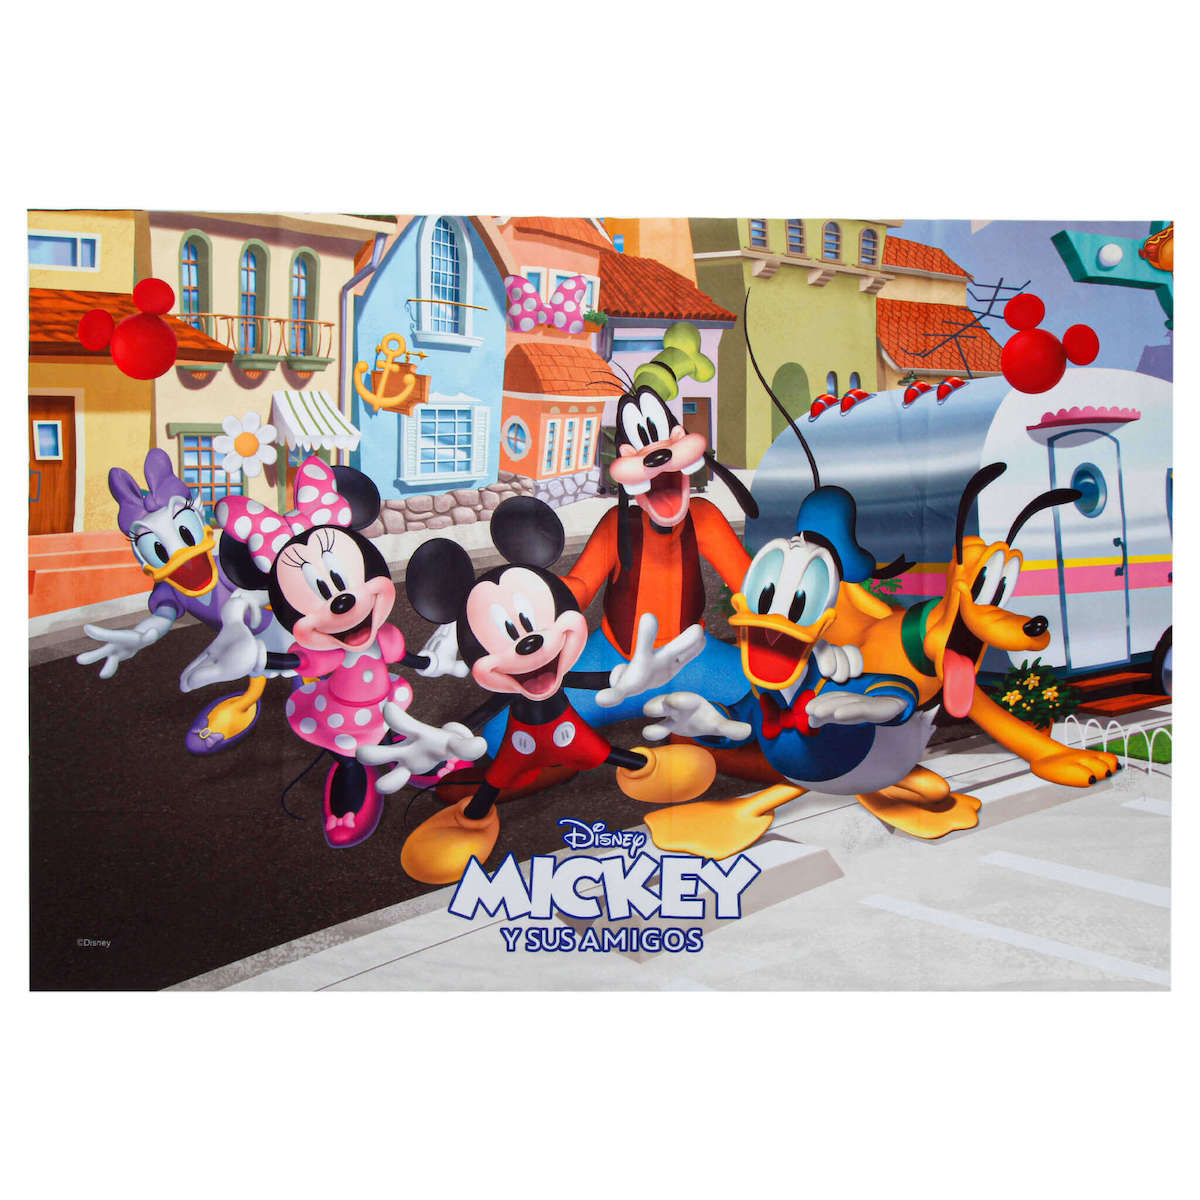 Celebra el cumpleaños de Mickey Mouse y 'Fantasía' •